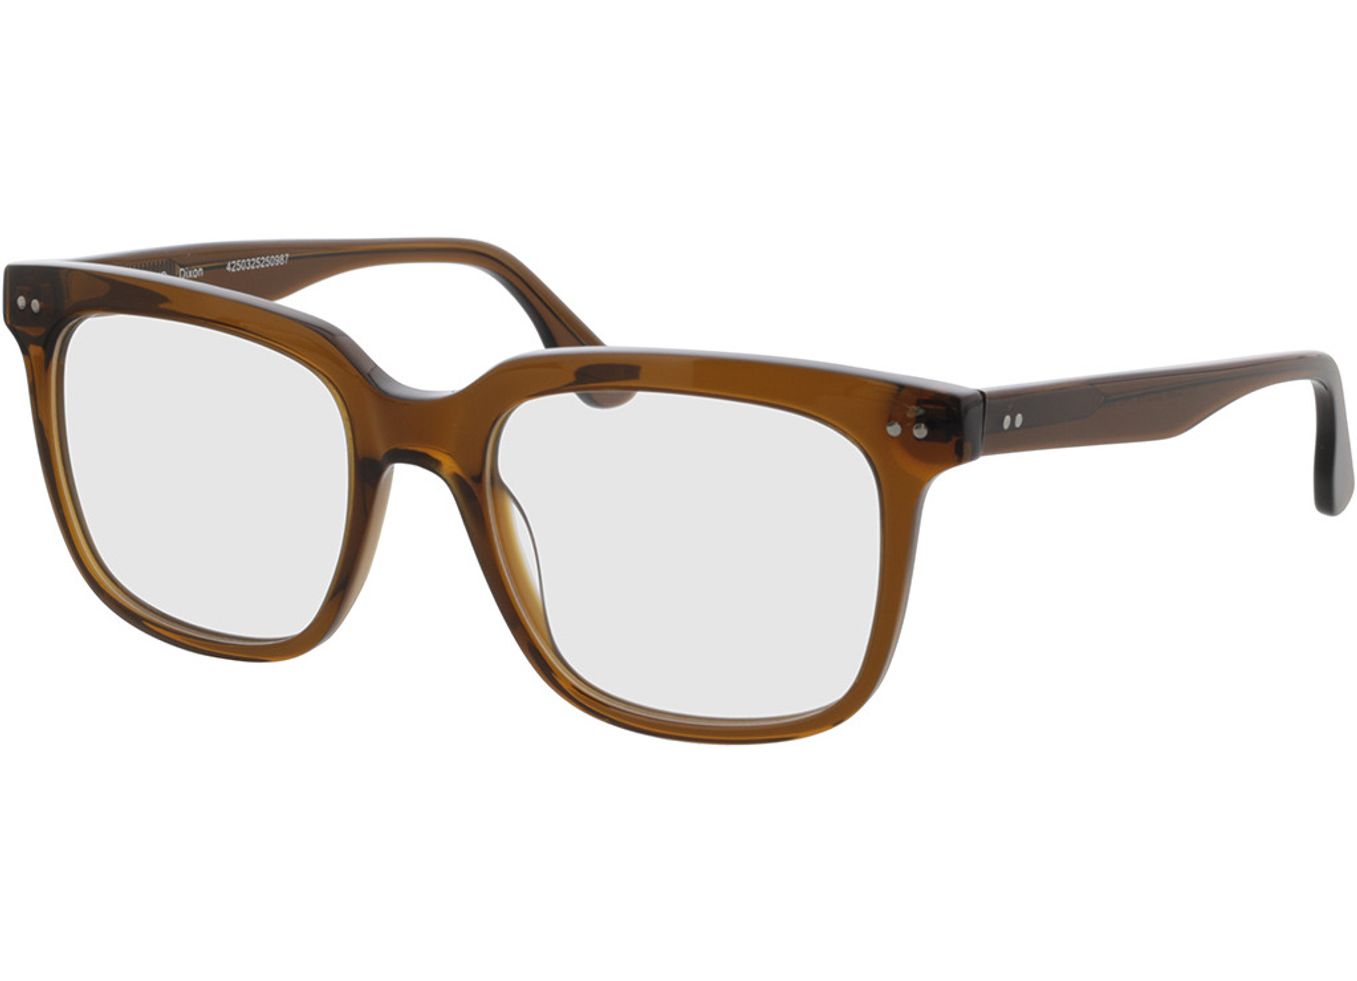 Dixon - braun-transparent Gleitsichtbrille, Vollrand, Eckig von Brille24 Collection